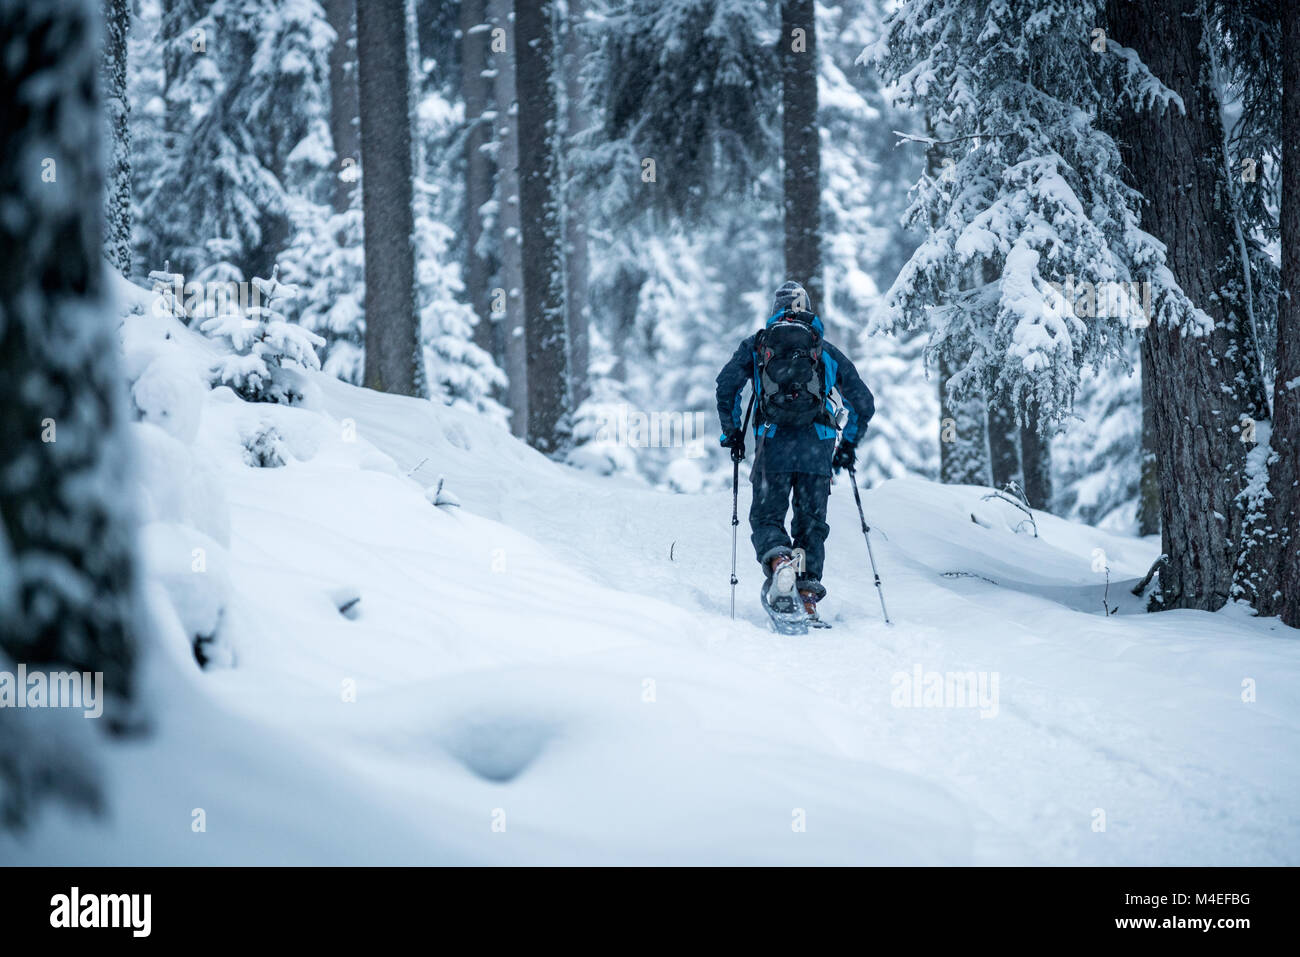 Man snowshoeing through winter forest,Zauchensee,Salzburg,Austria Stock Photo